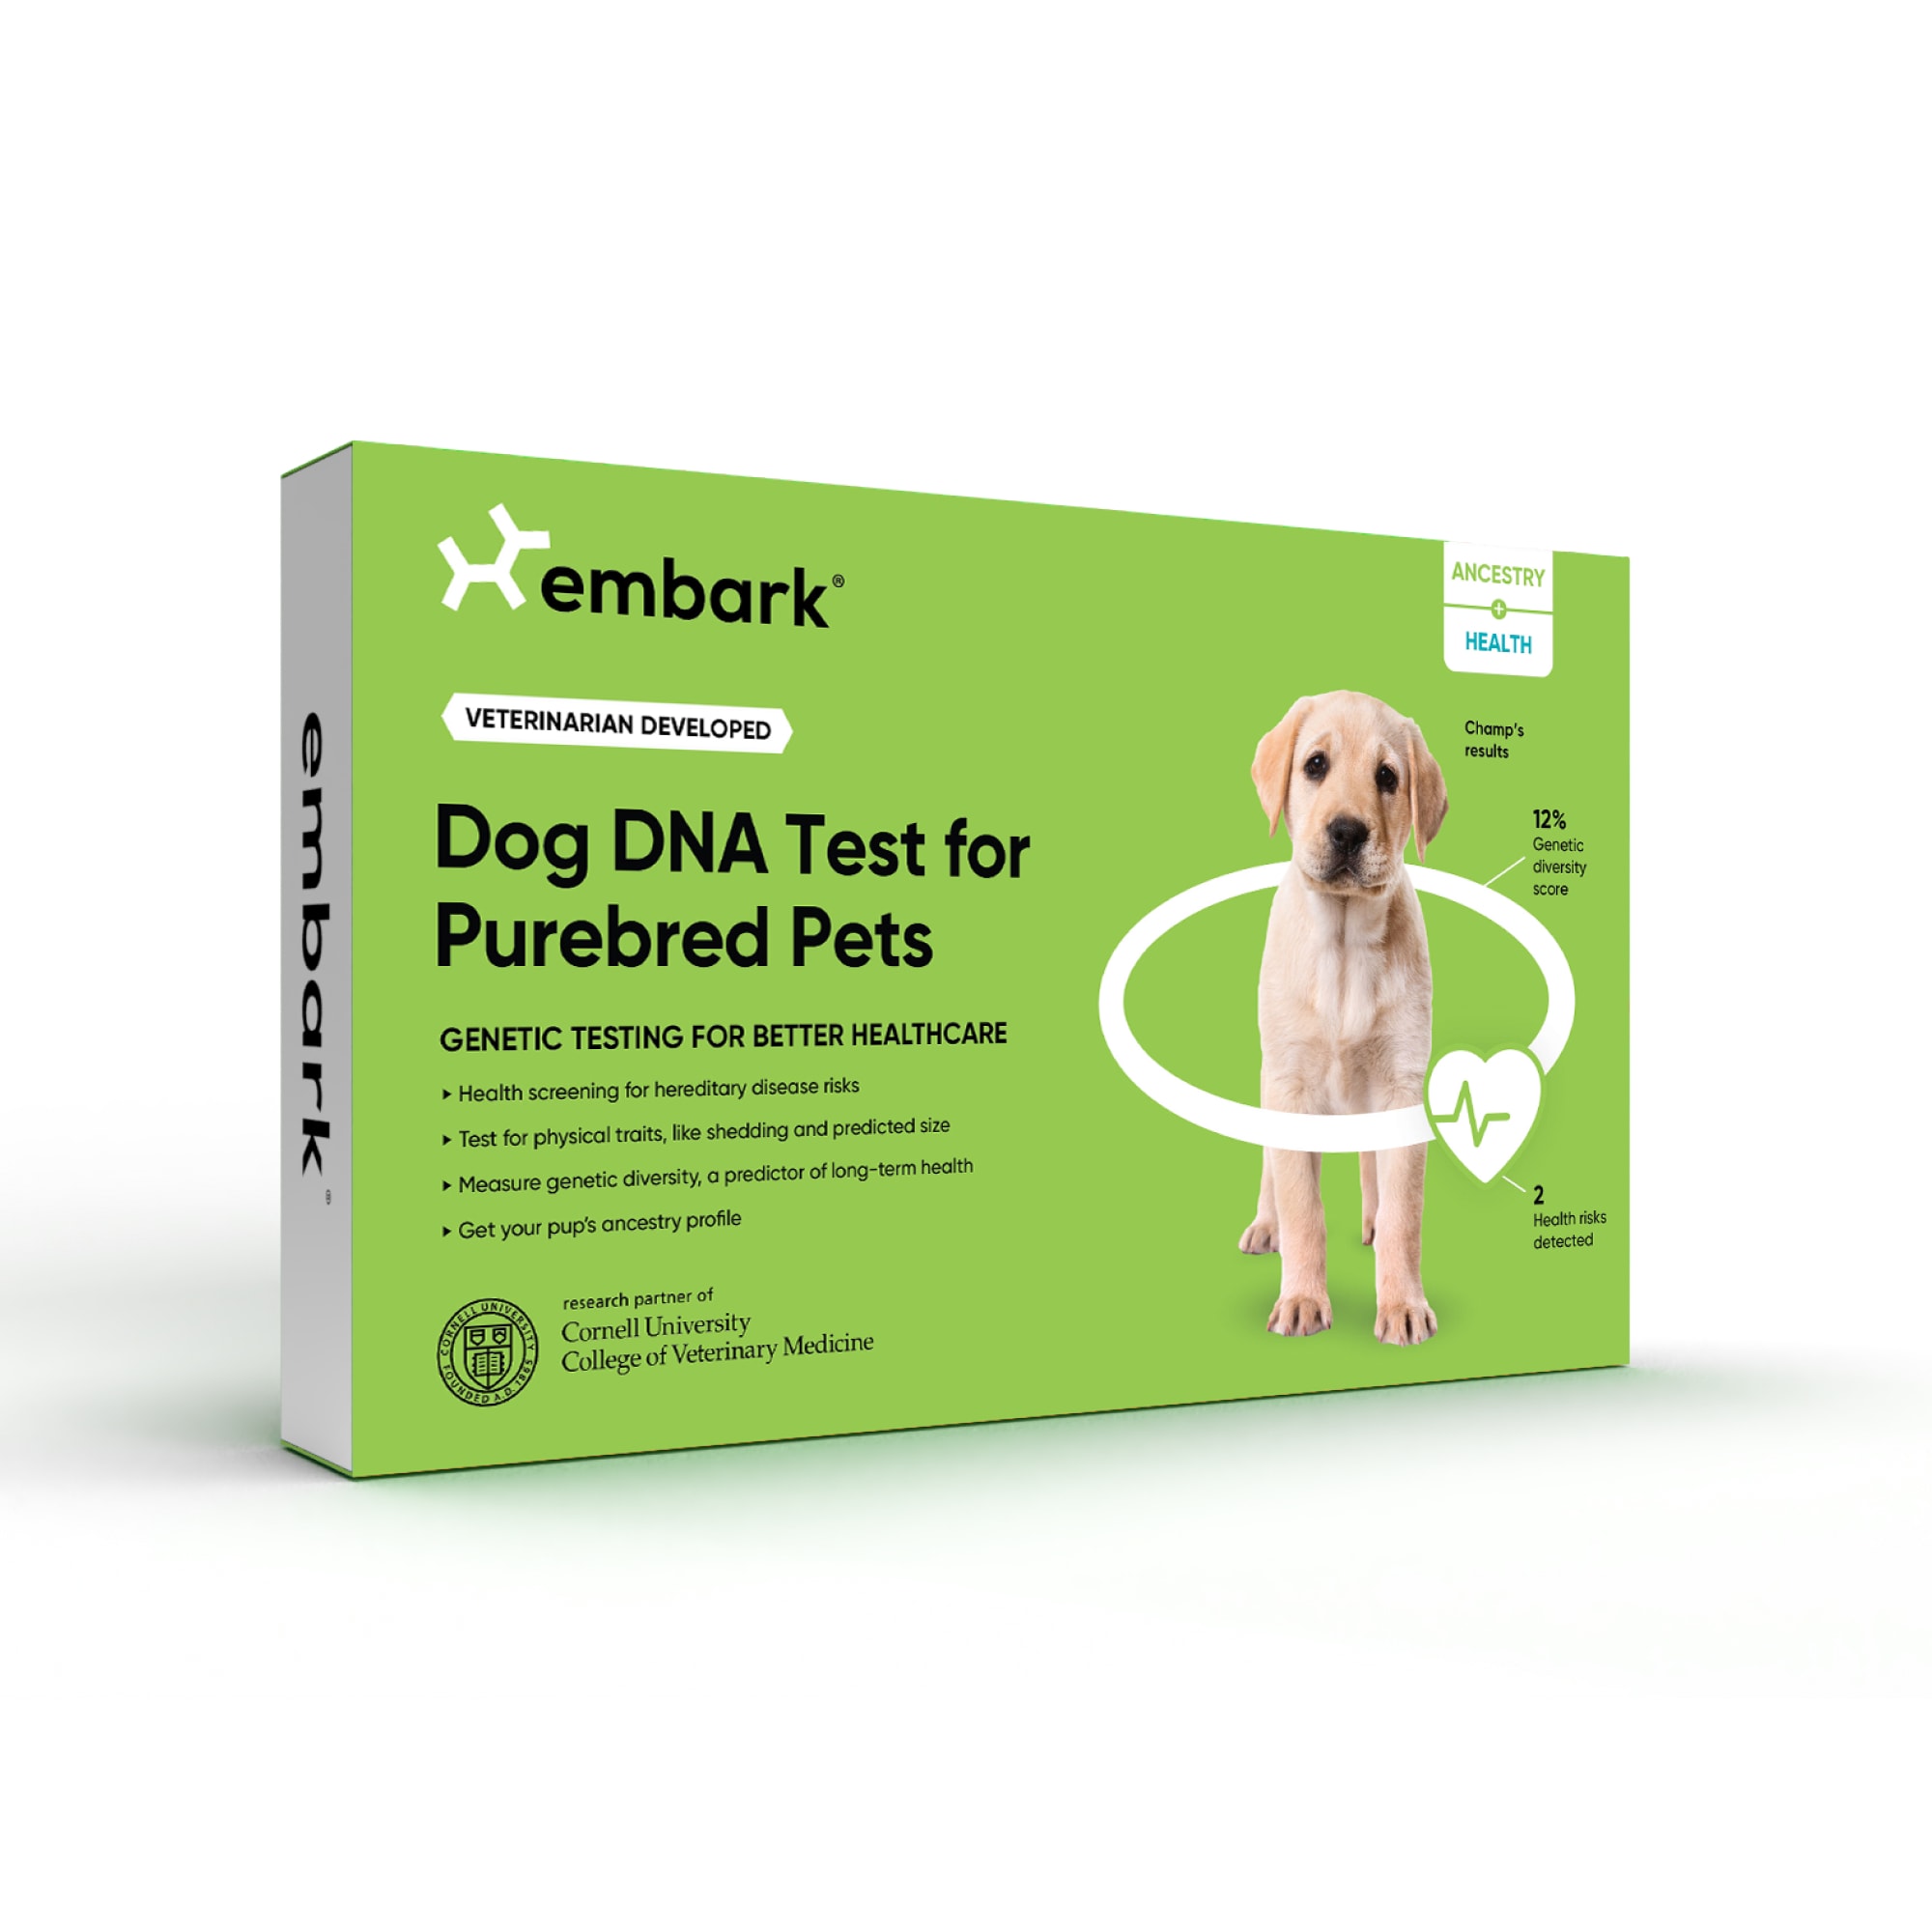 Embark Vet DNA Test Kit for Purebred Dogs